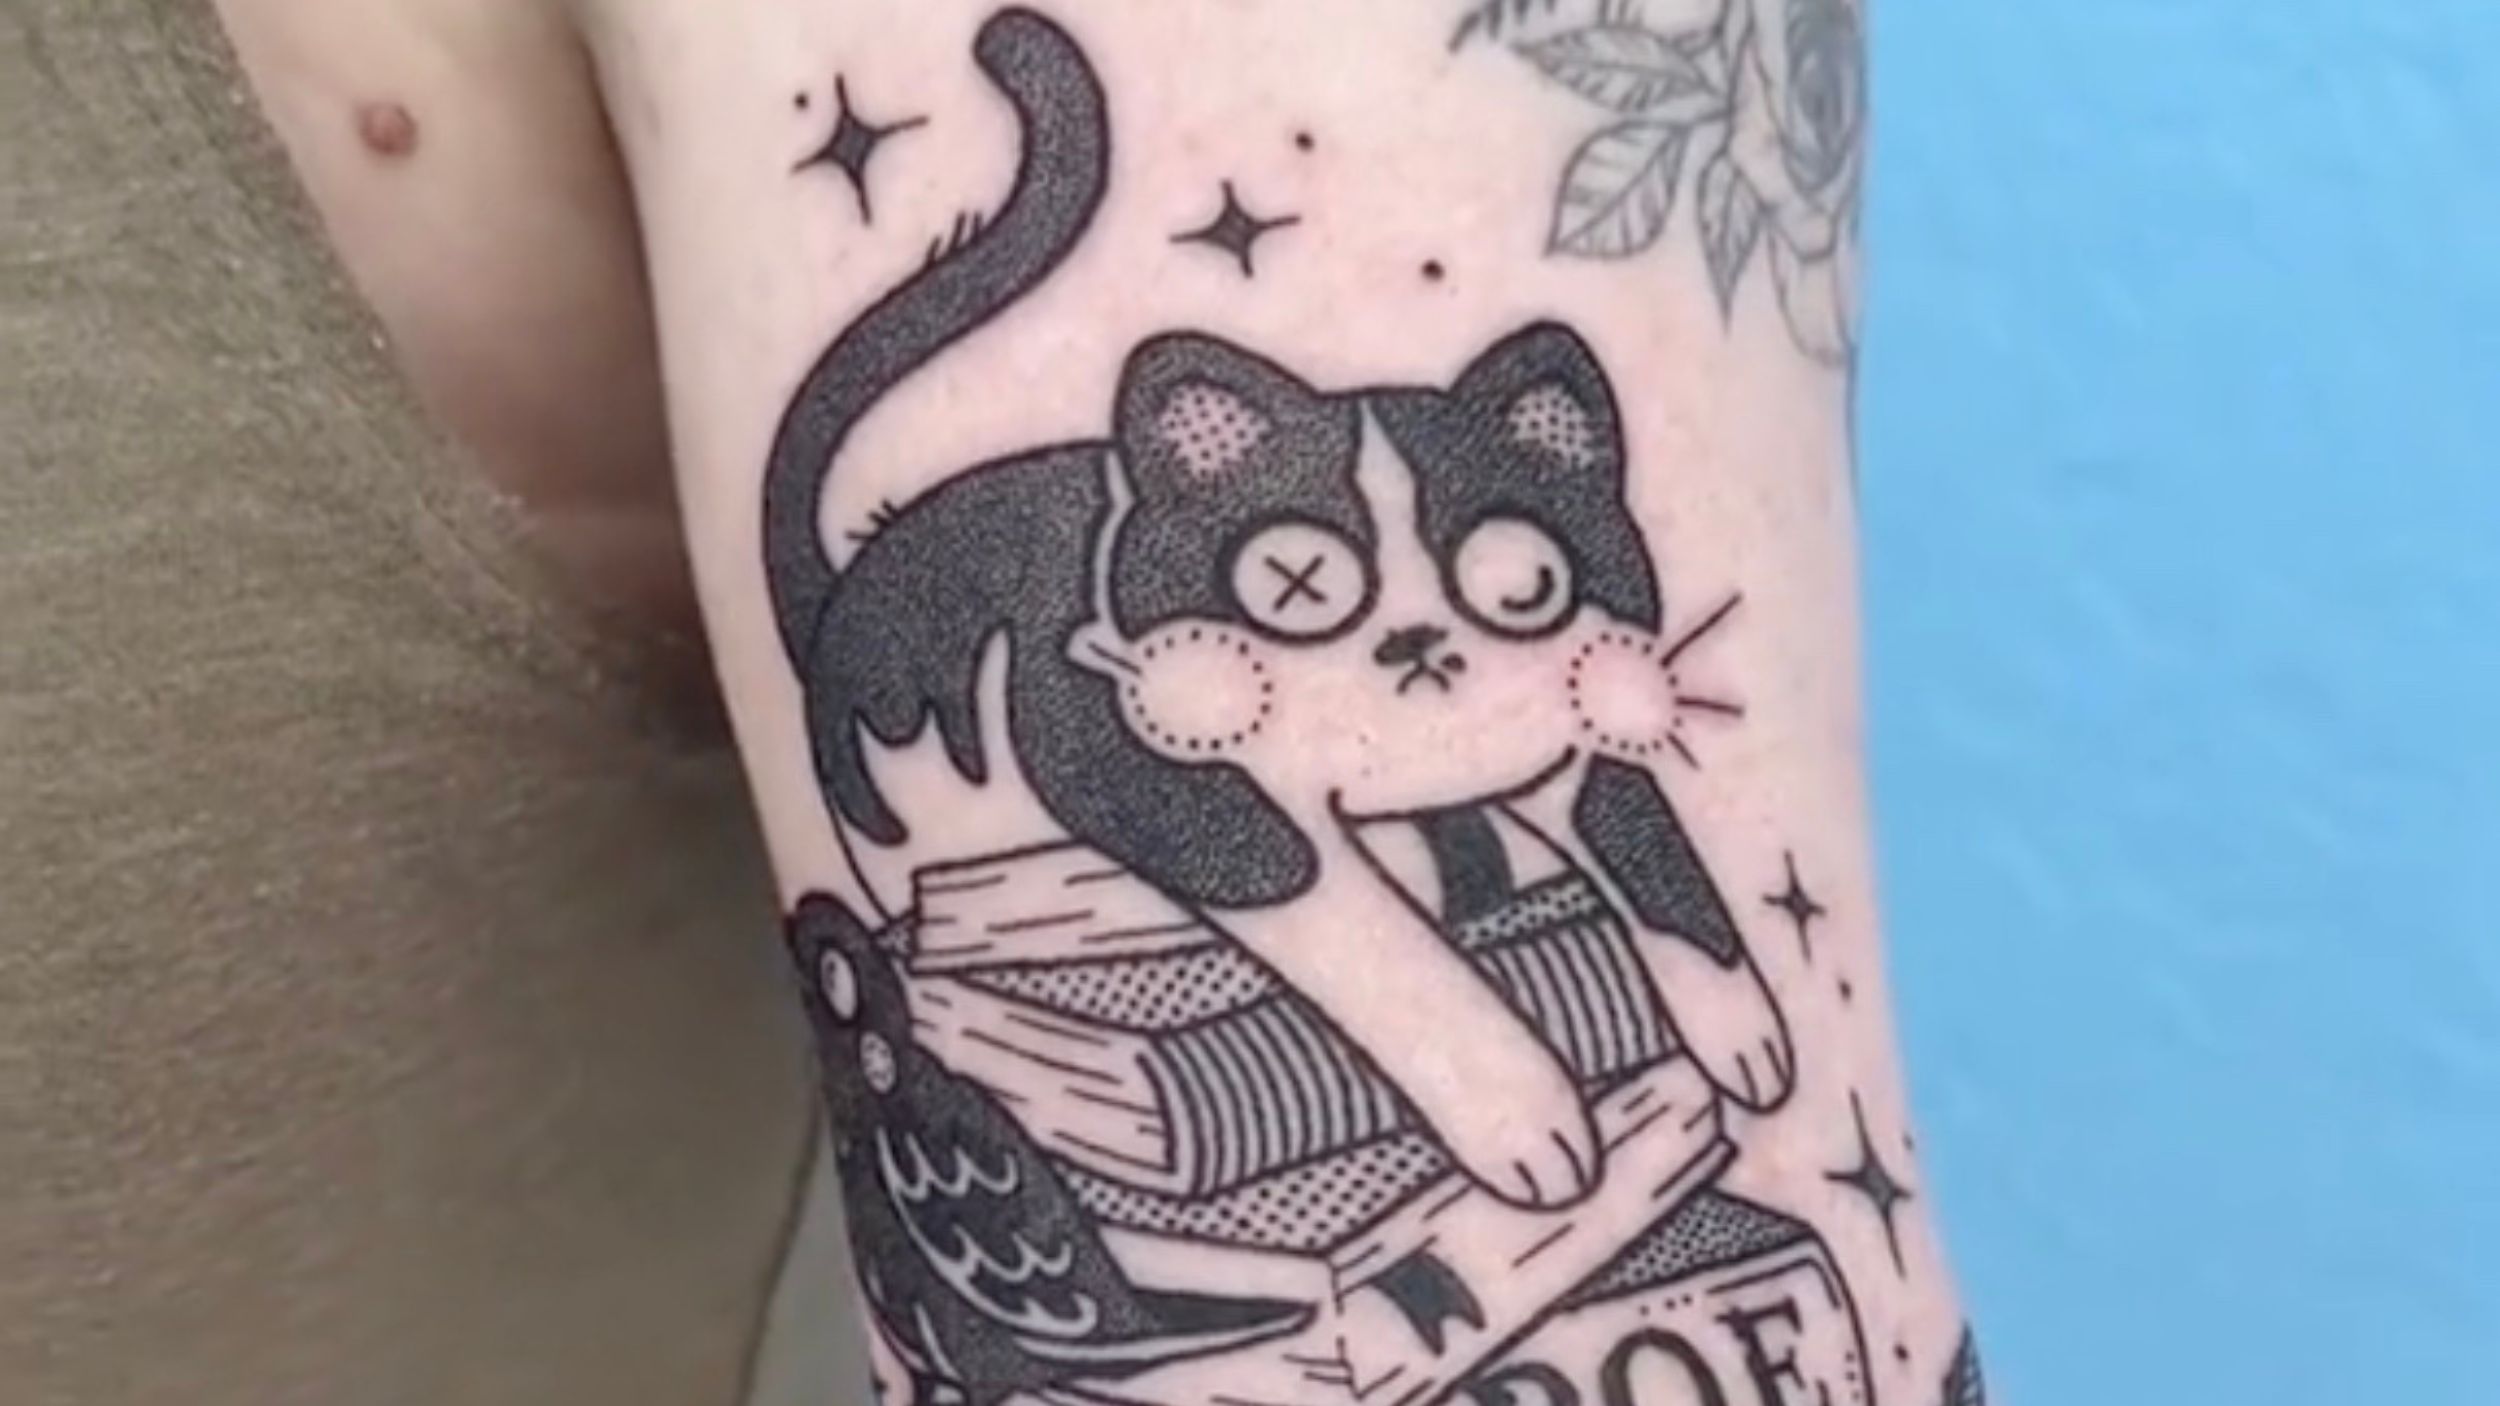 Micio tatuato sul braccio